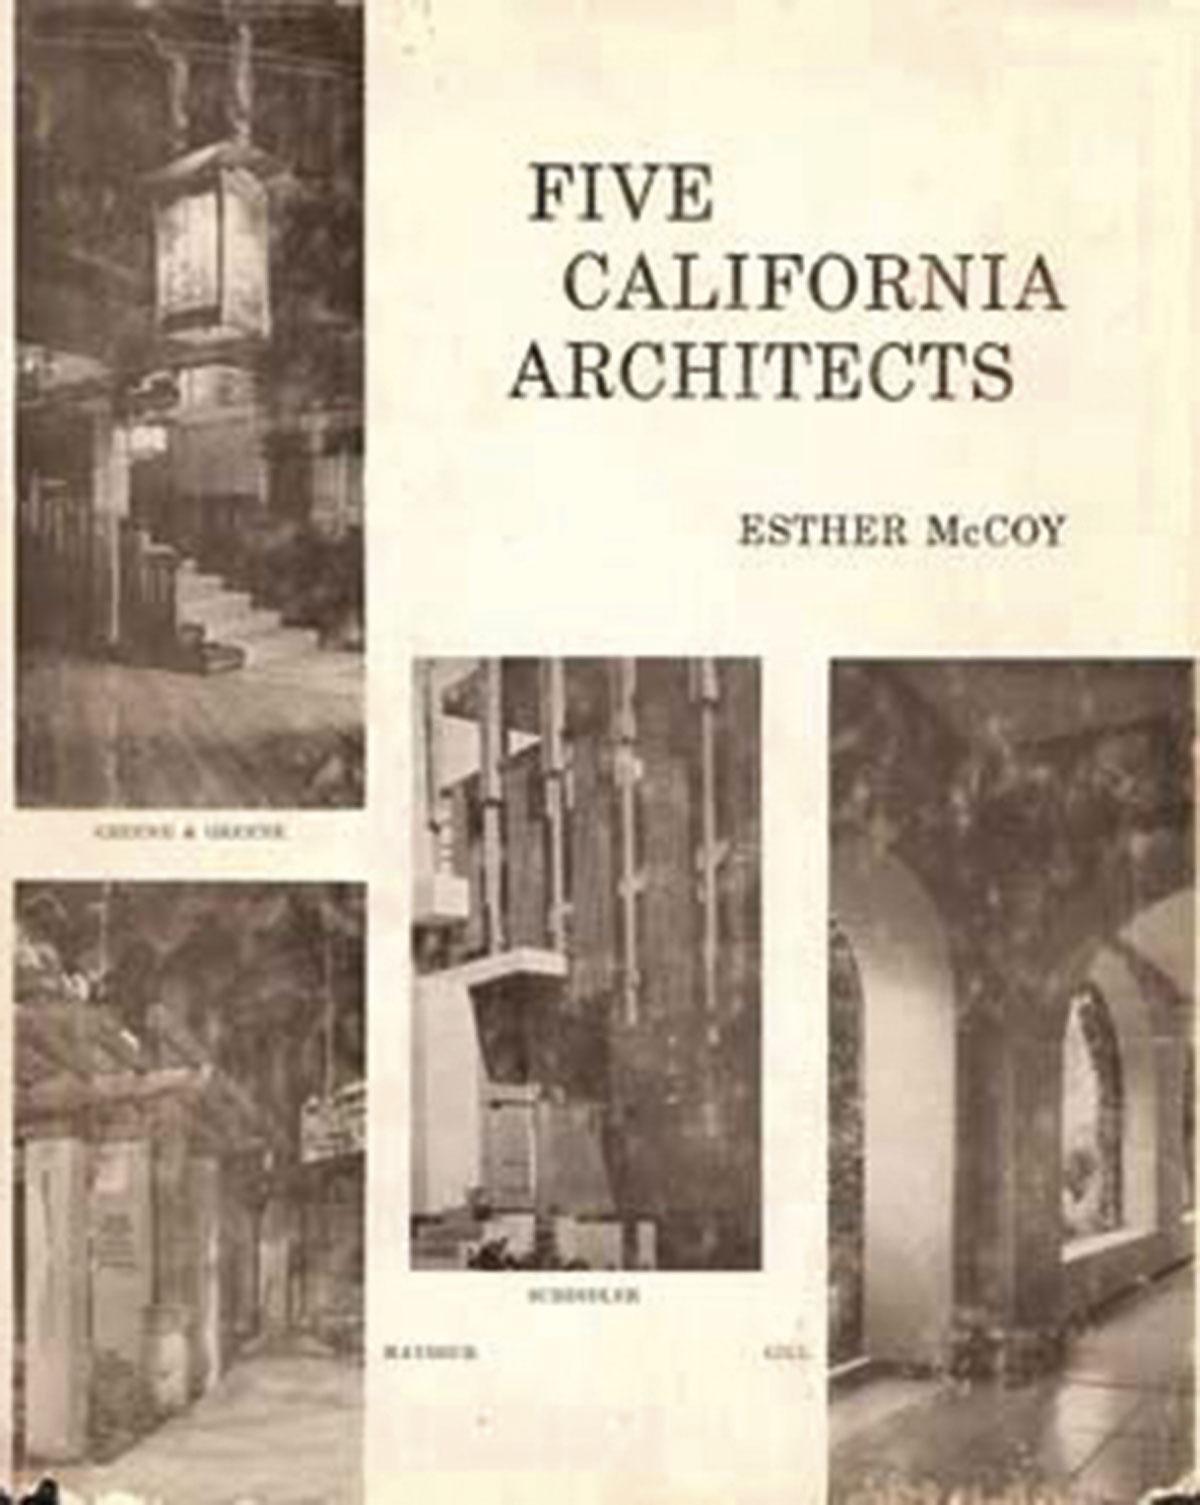 La couverture du livre Five California Architects.